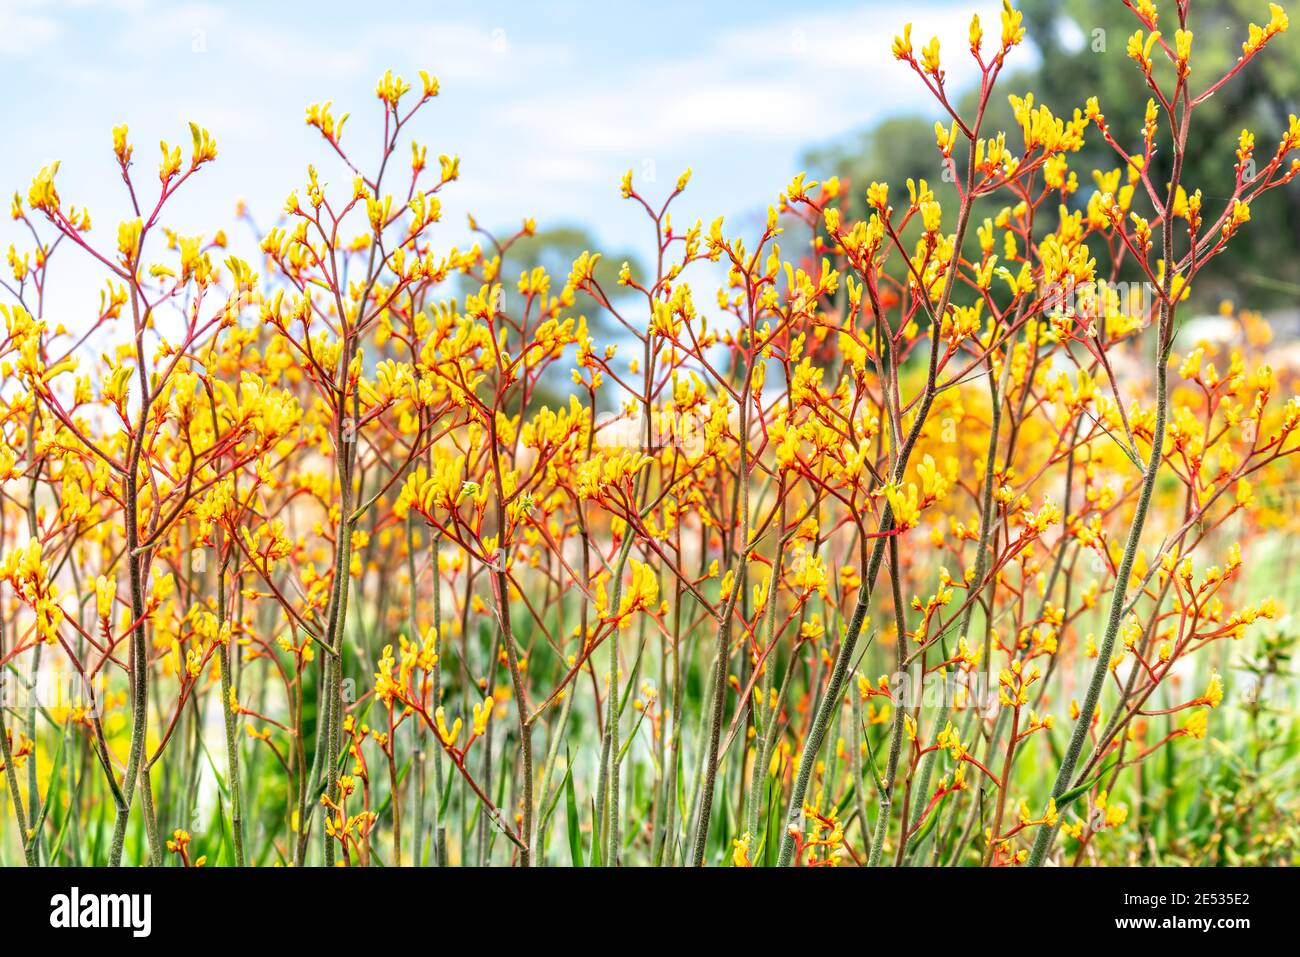 Yellow Kangaroo Tail Plants  in an Australian garden setting Stock Photo